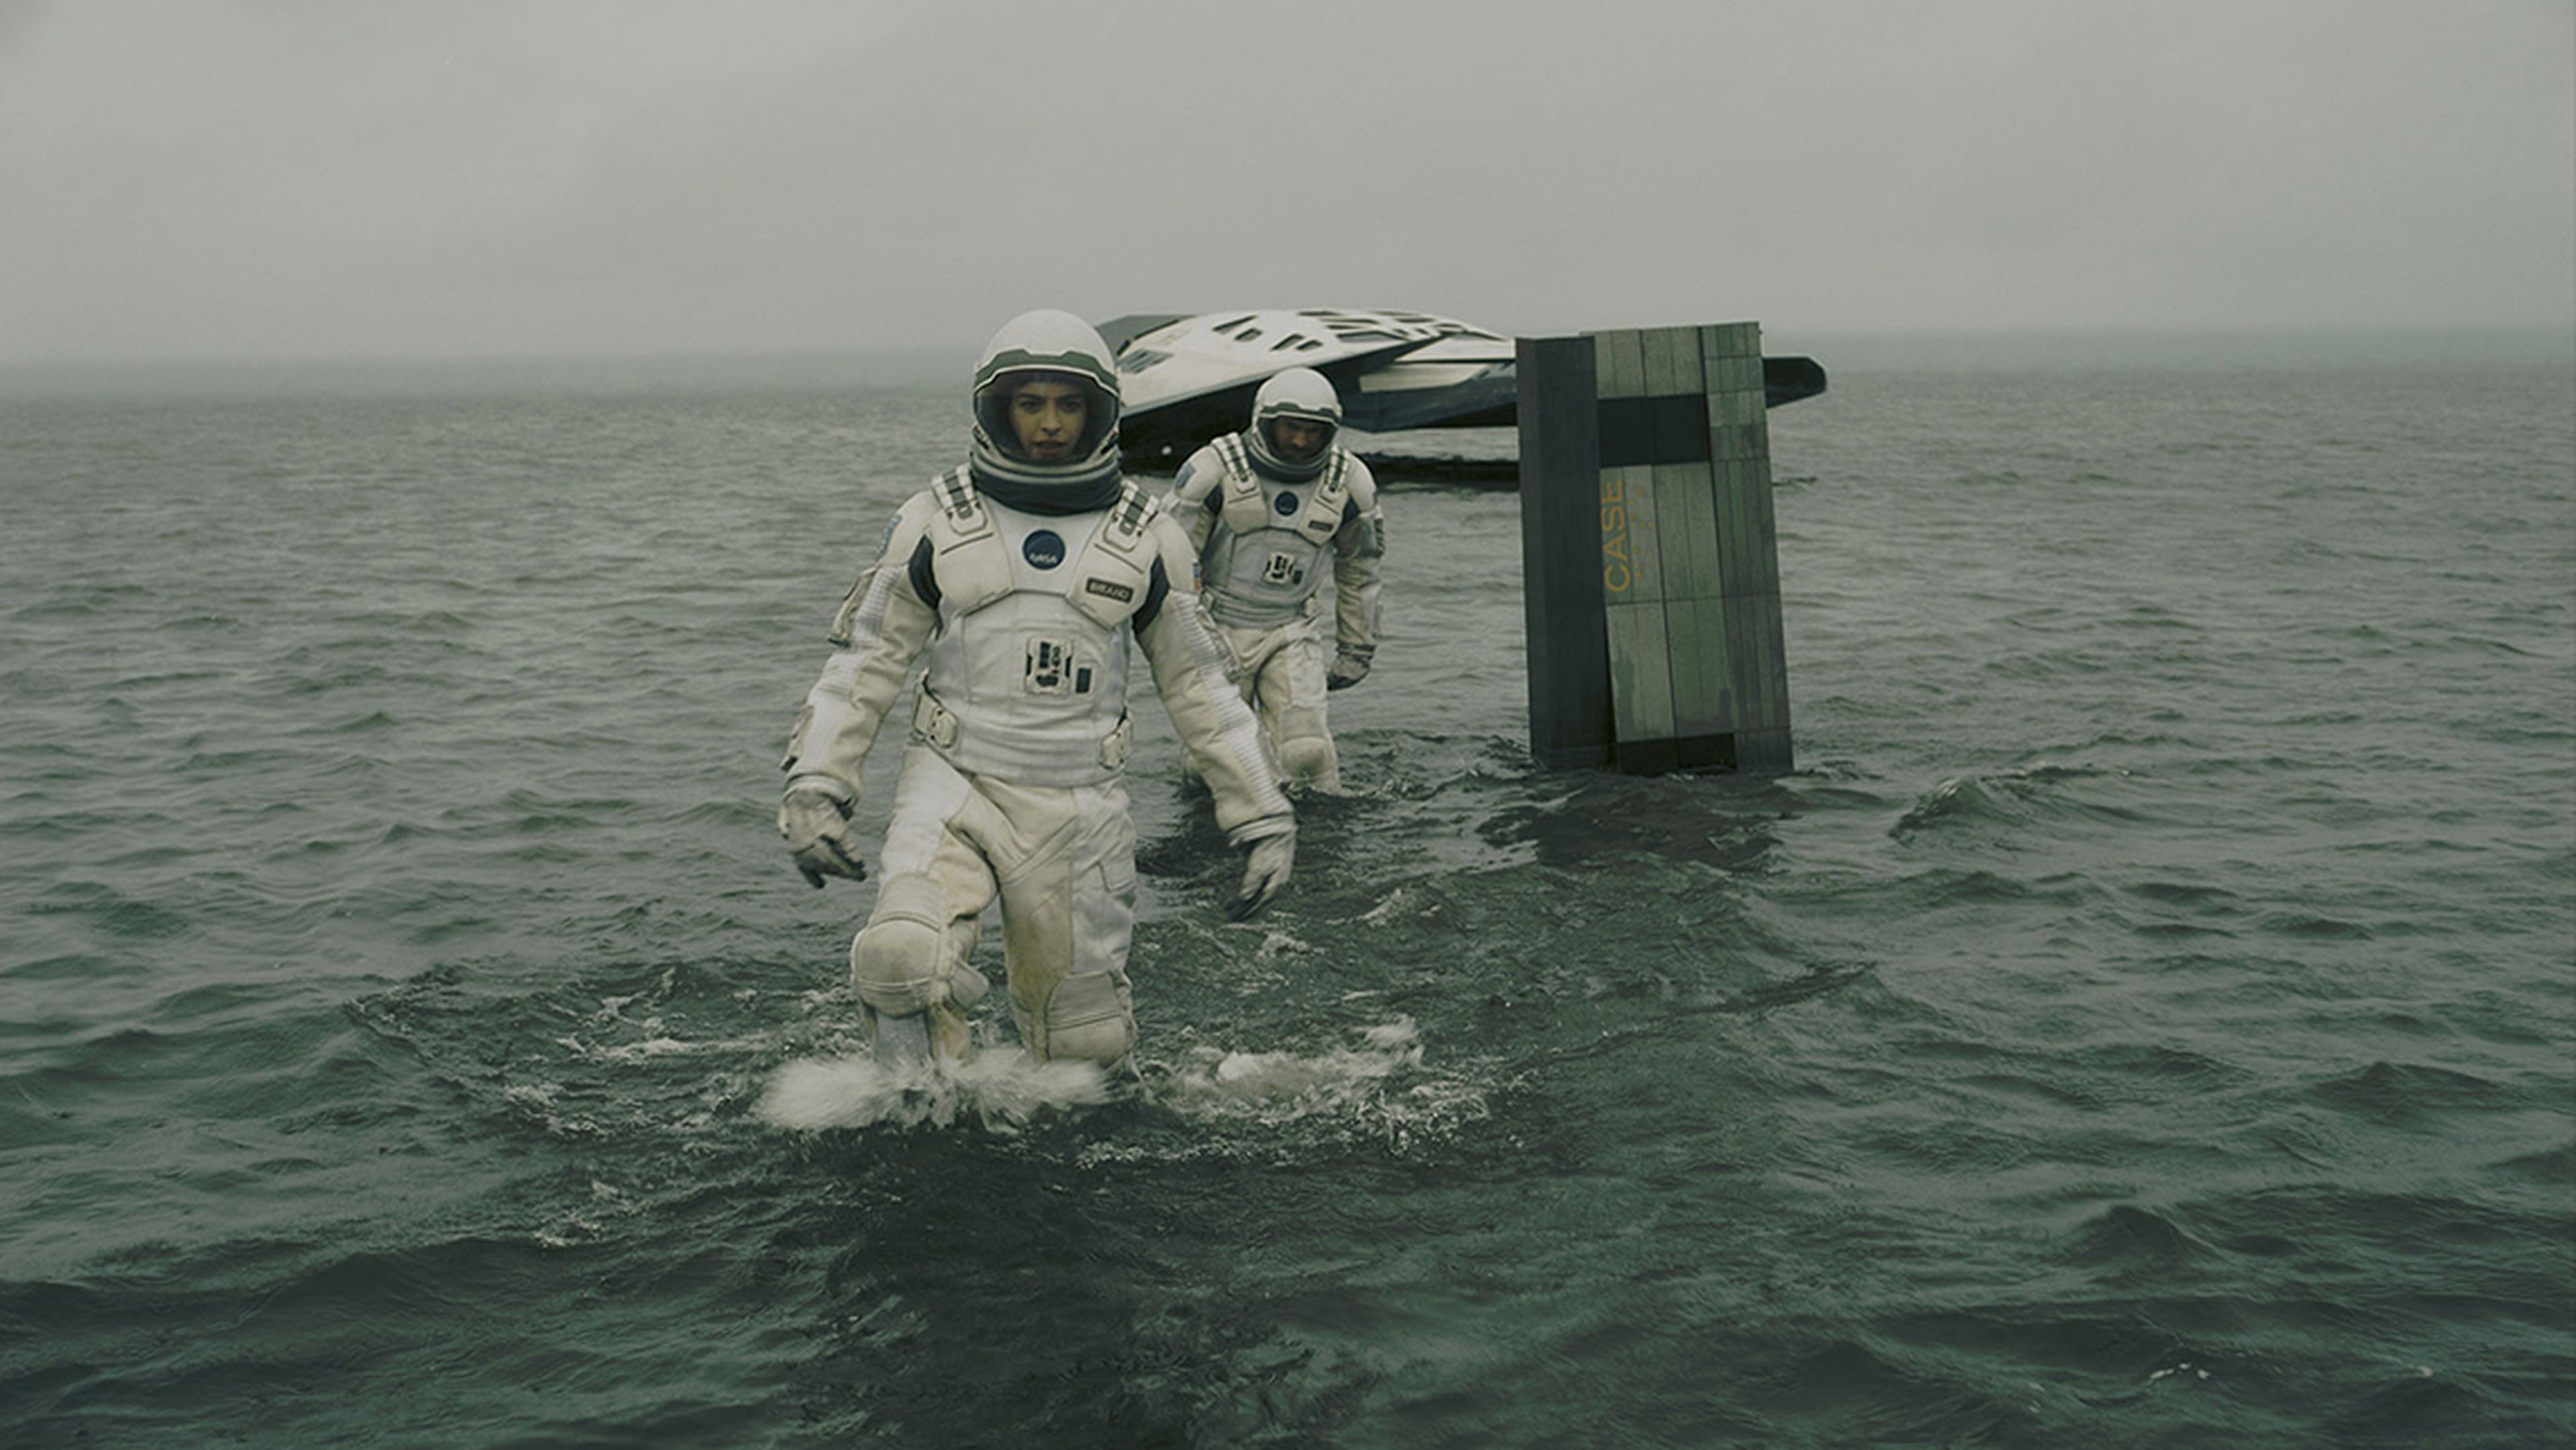 Fotograma de la película "Interstellar" (2014).